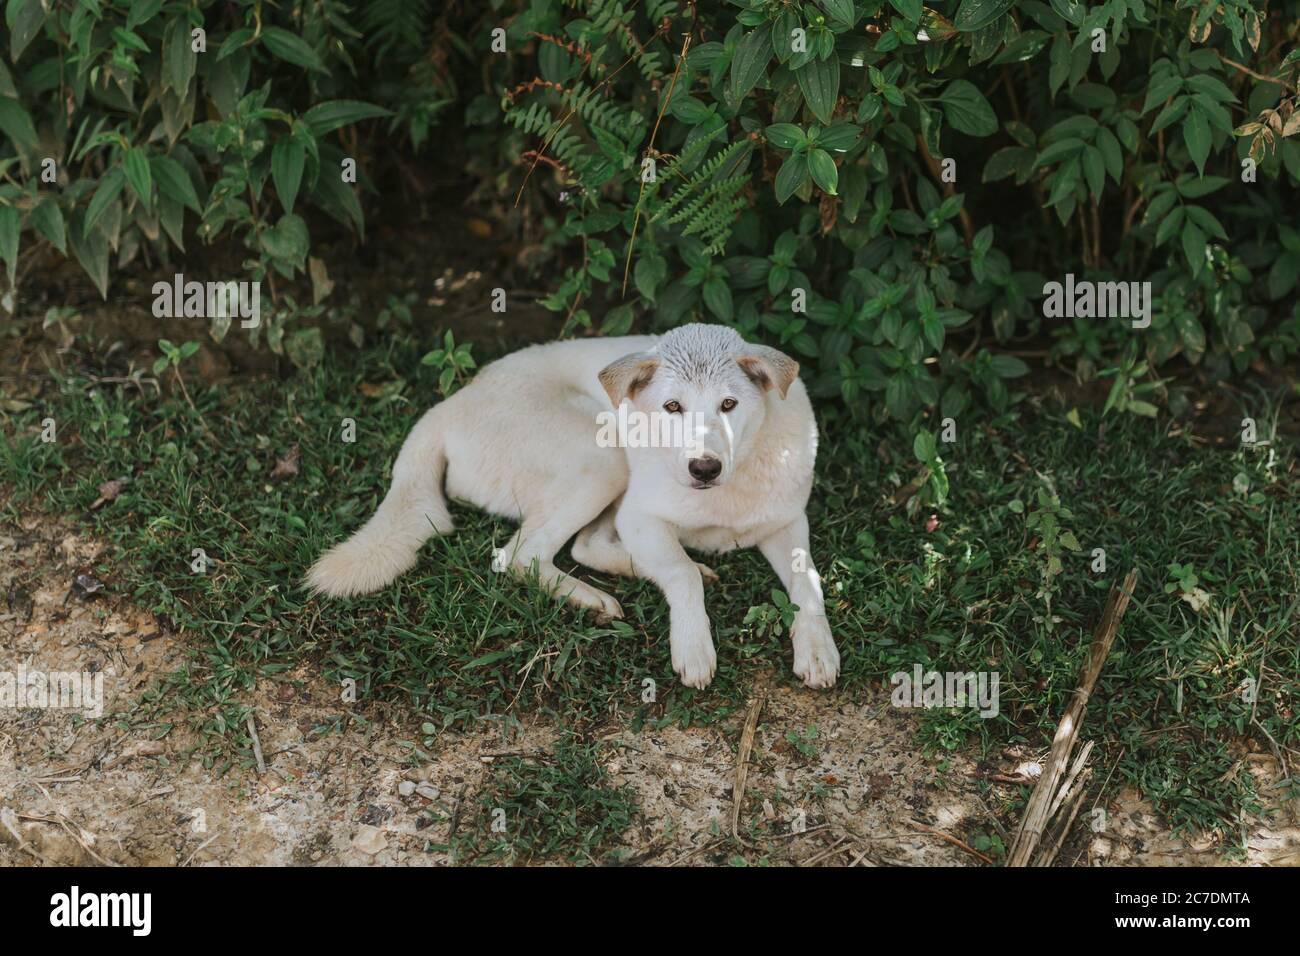 Breite Aufnahme eines niedlichen weißen Hundes im Gras In der Nähe von grünen Pflanzen während des Tages Stockfoto